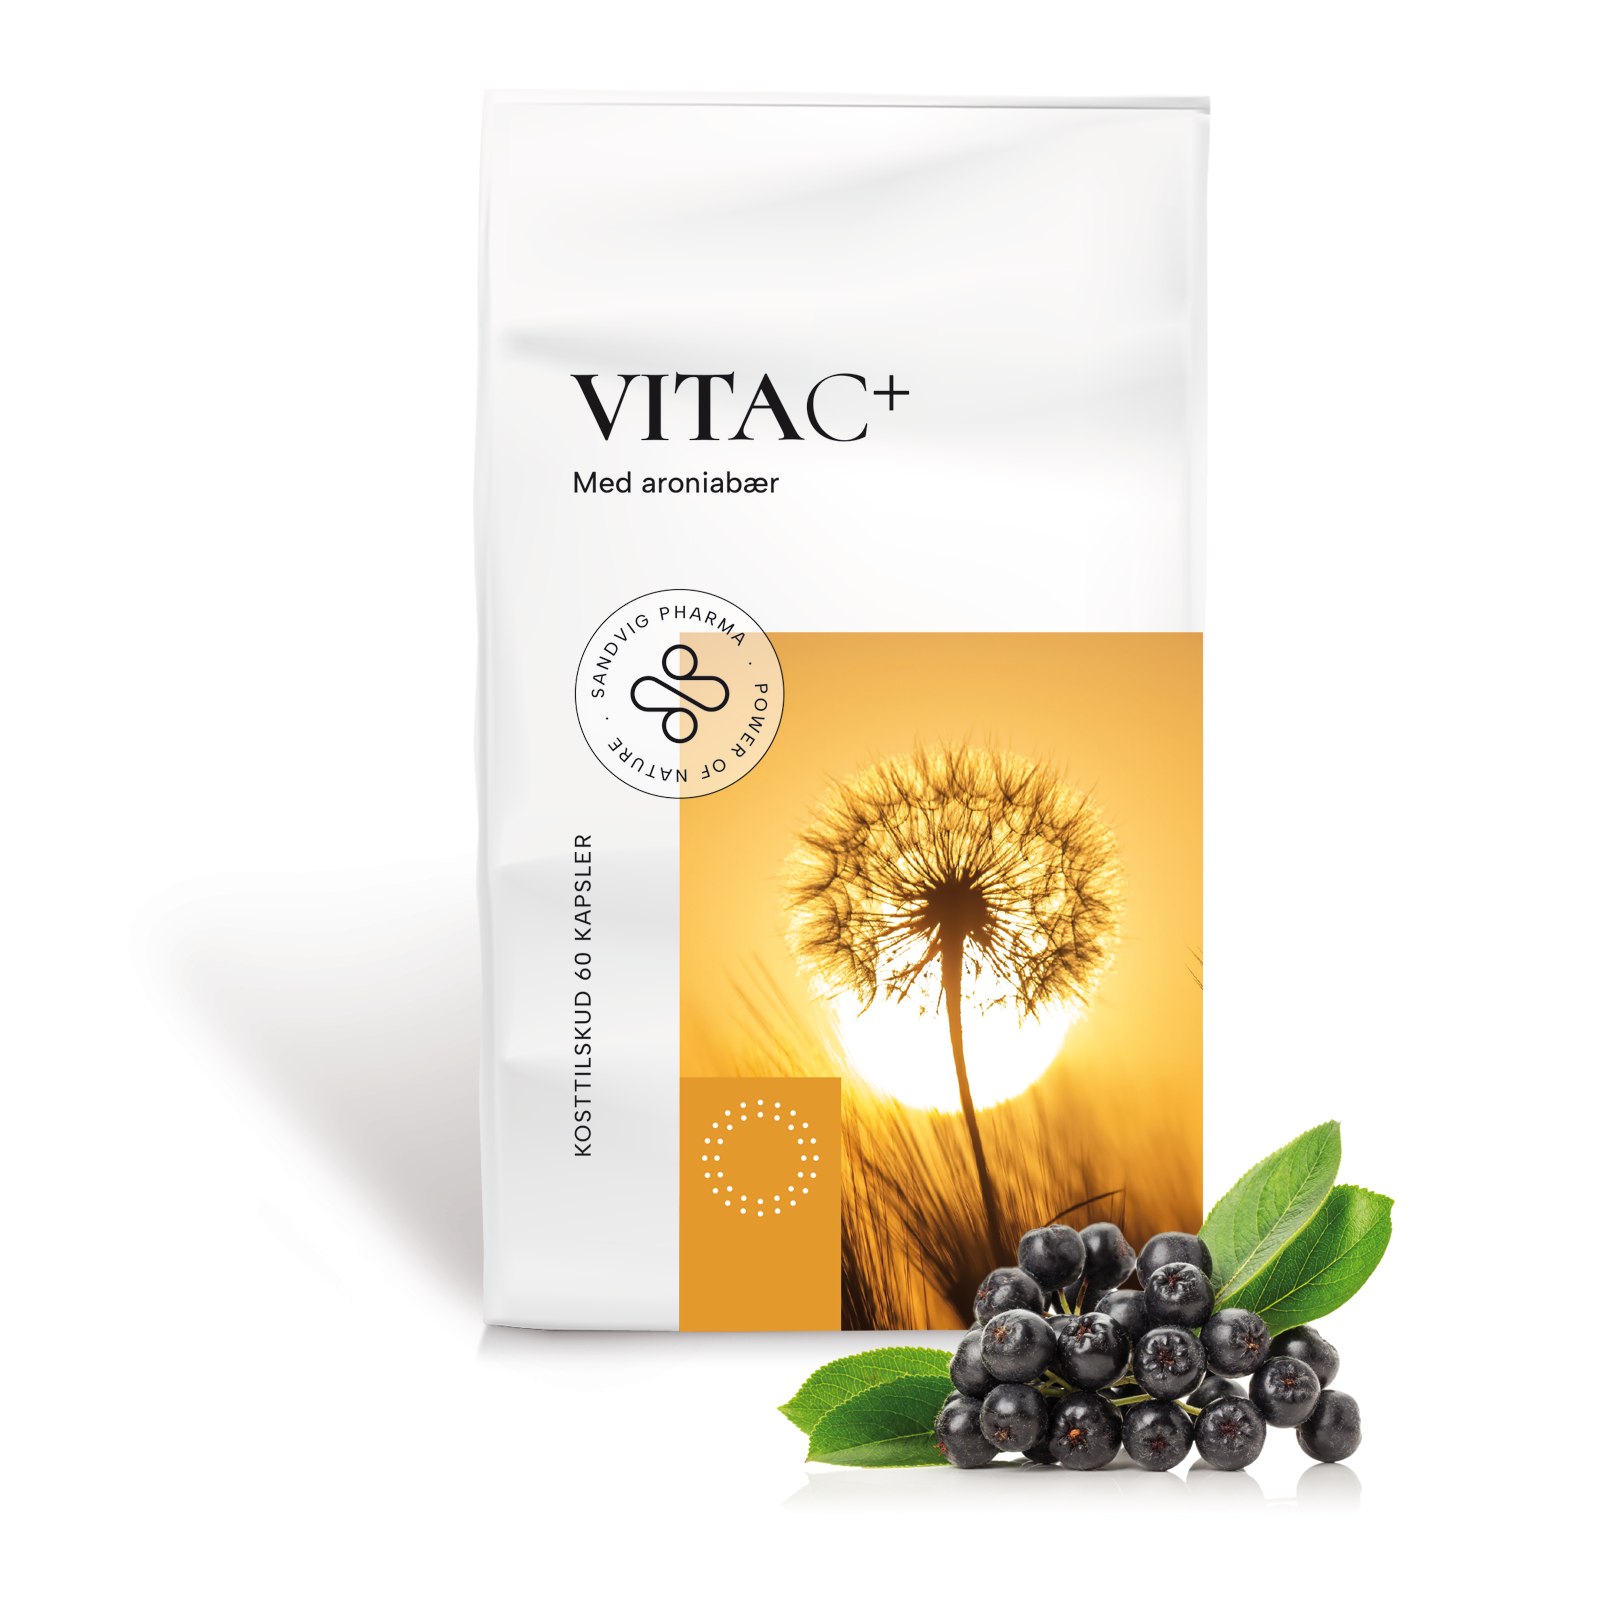 VITAC+ kosttilskud med vitamin C og aroniabær